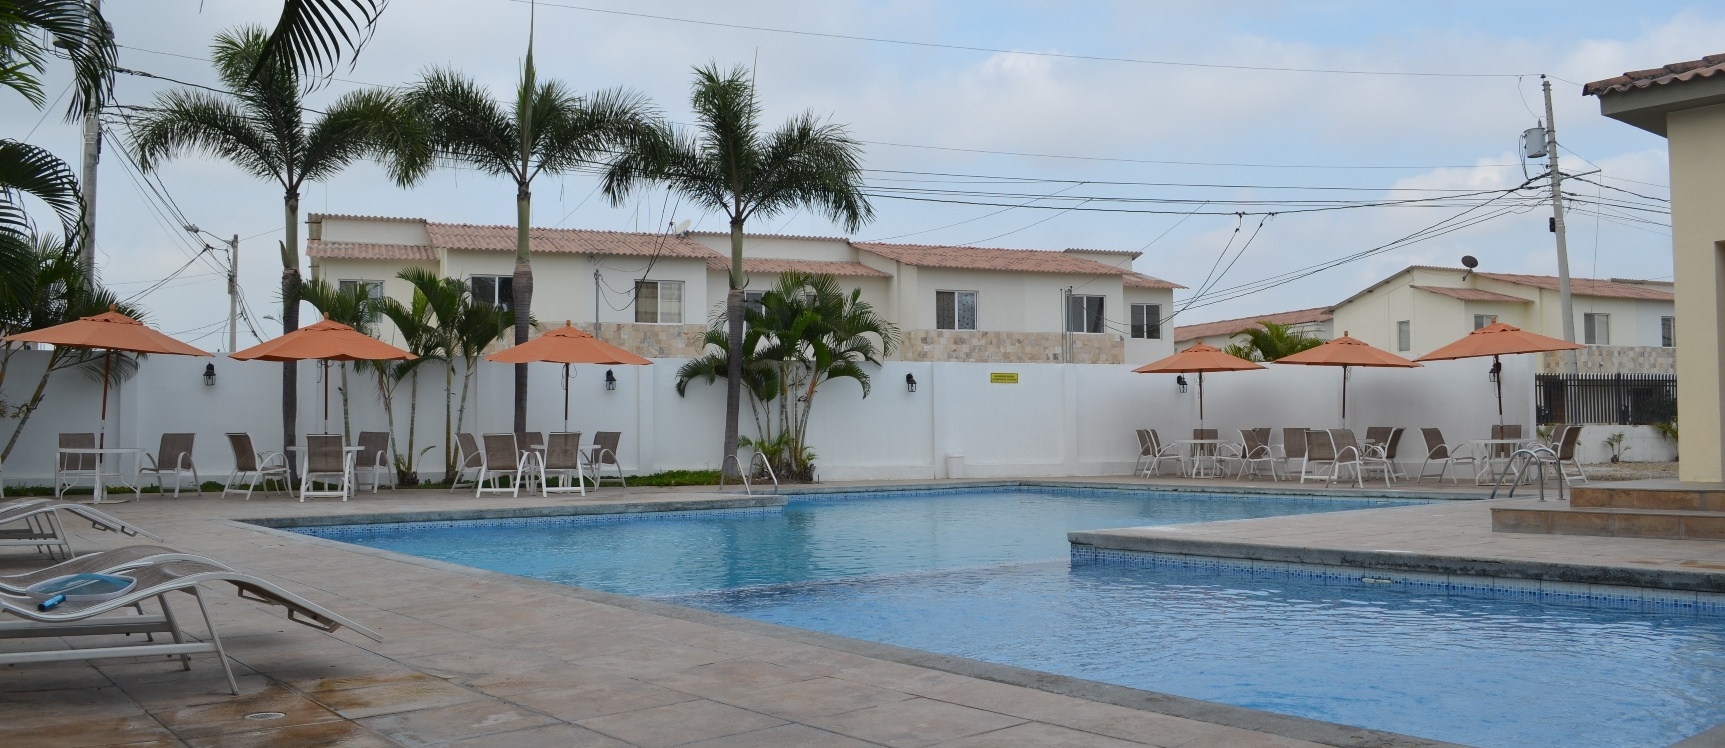 GeoBienes - Casa en venta en urbanización Malaga II  Via Salitre - Samborondon    - Plusvalia Guayaquil Casas de venta y alquiler Inmobiliaria Ecuador